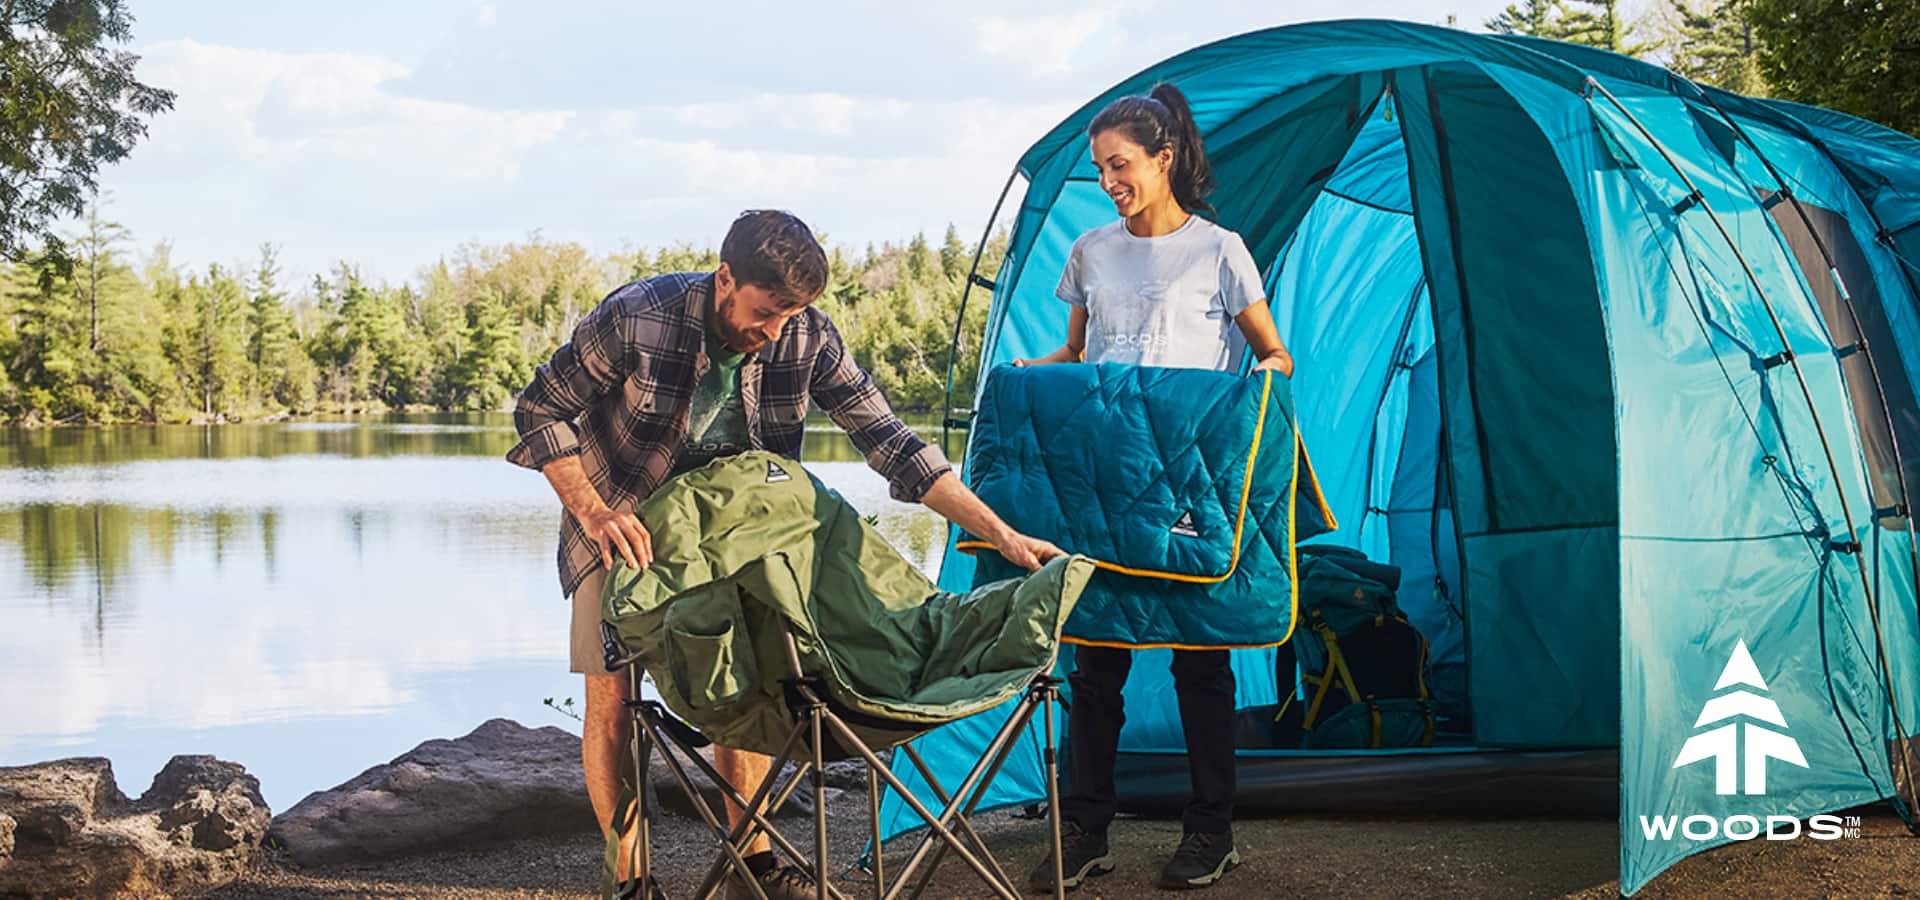 Un couple installe avec plaisir une chaise de camping à côté de leur tente, près d'un lac.